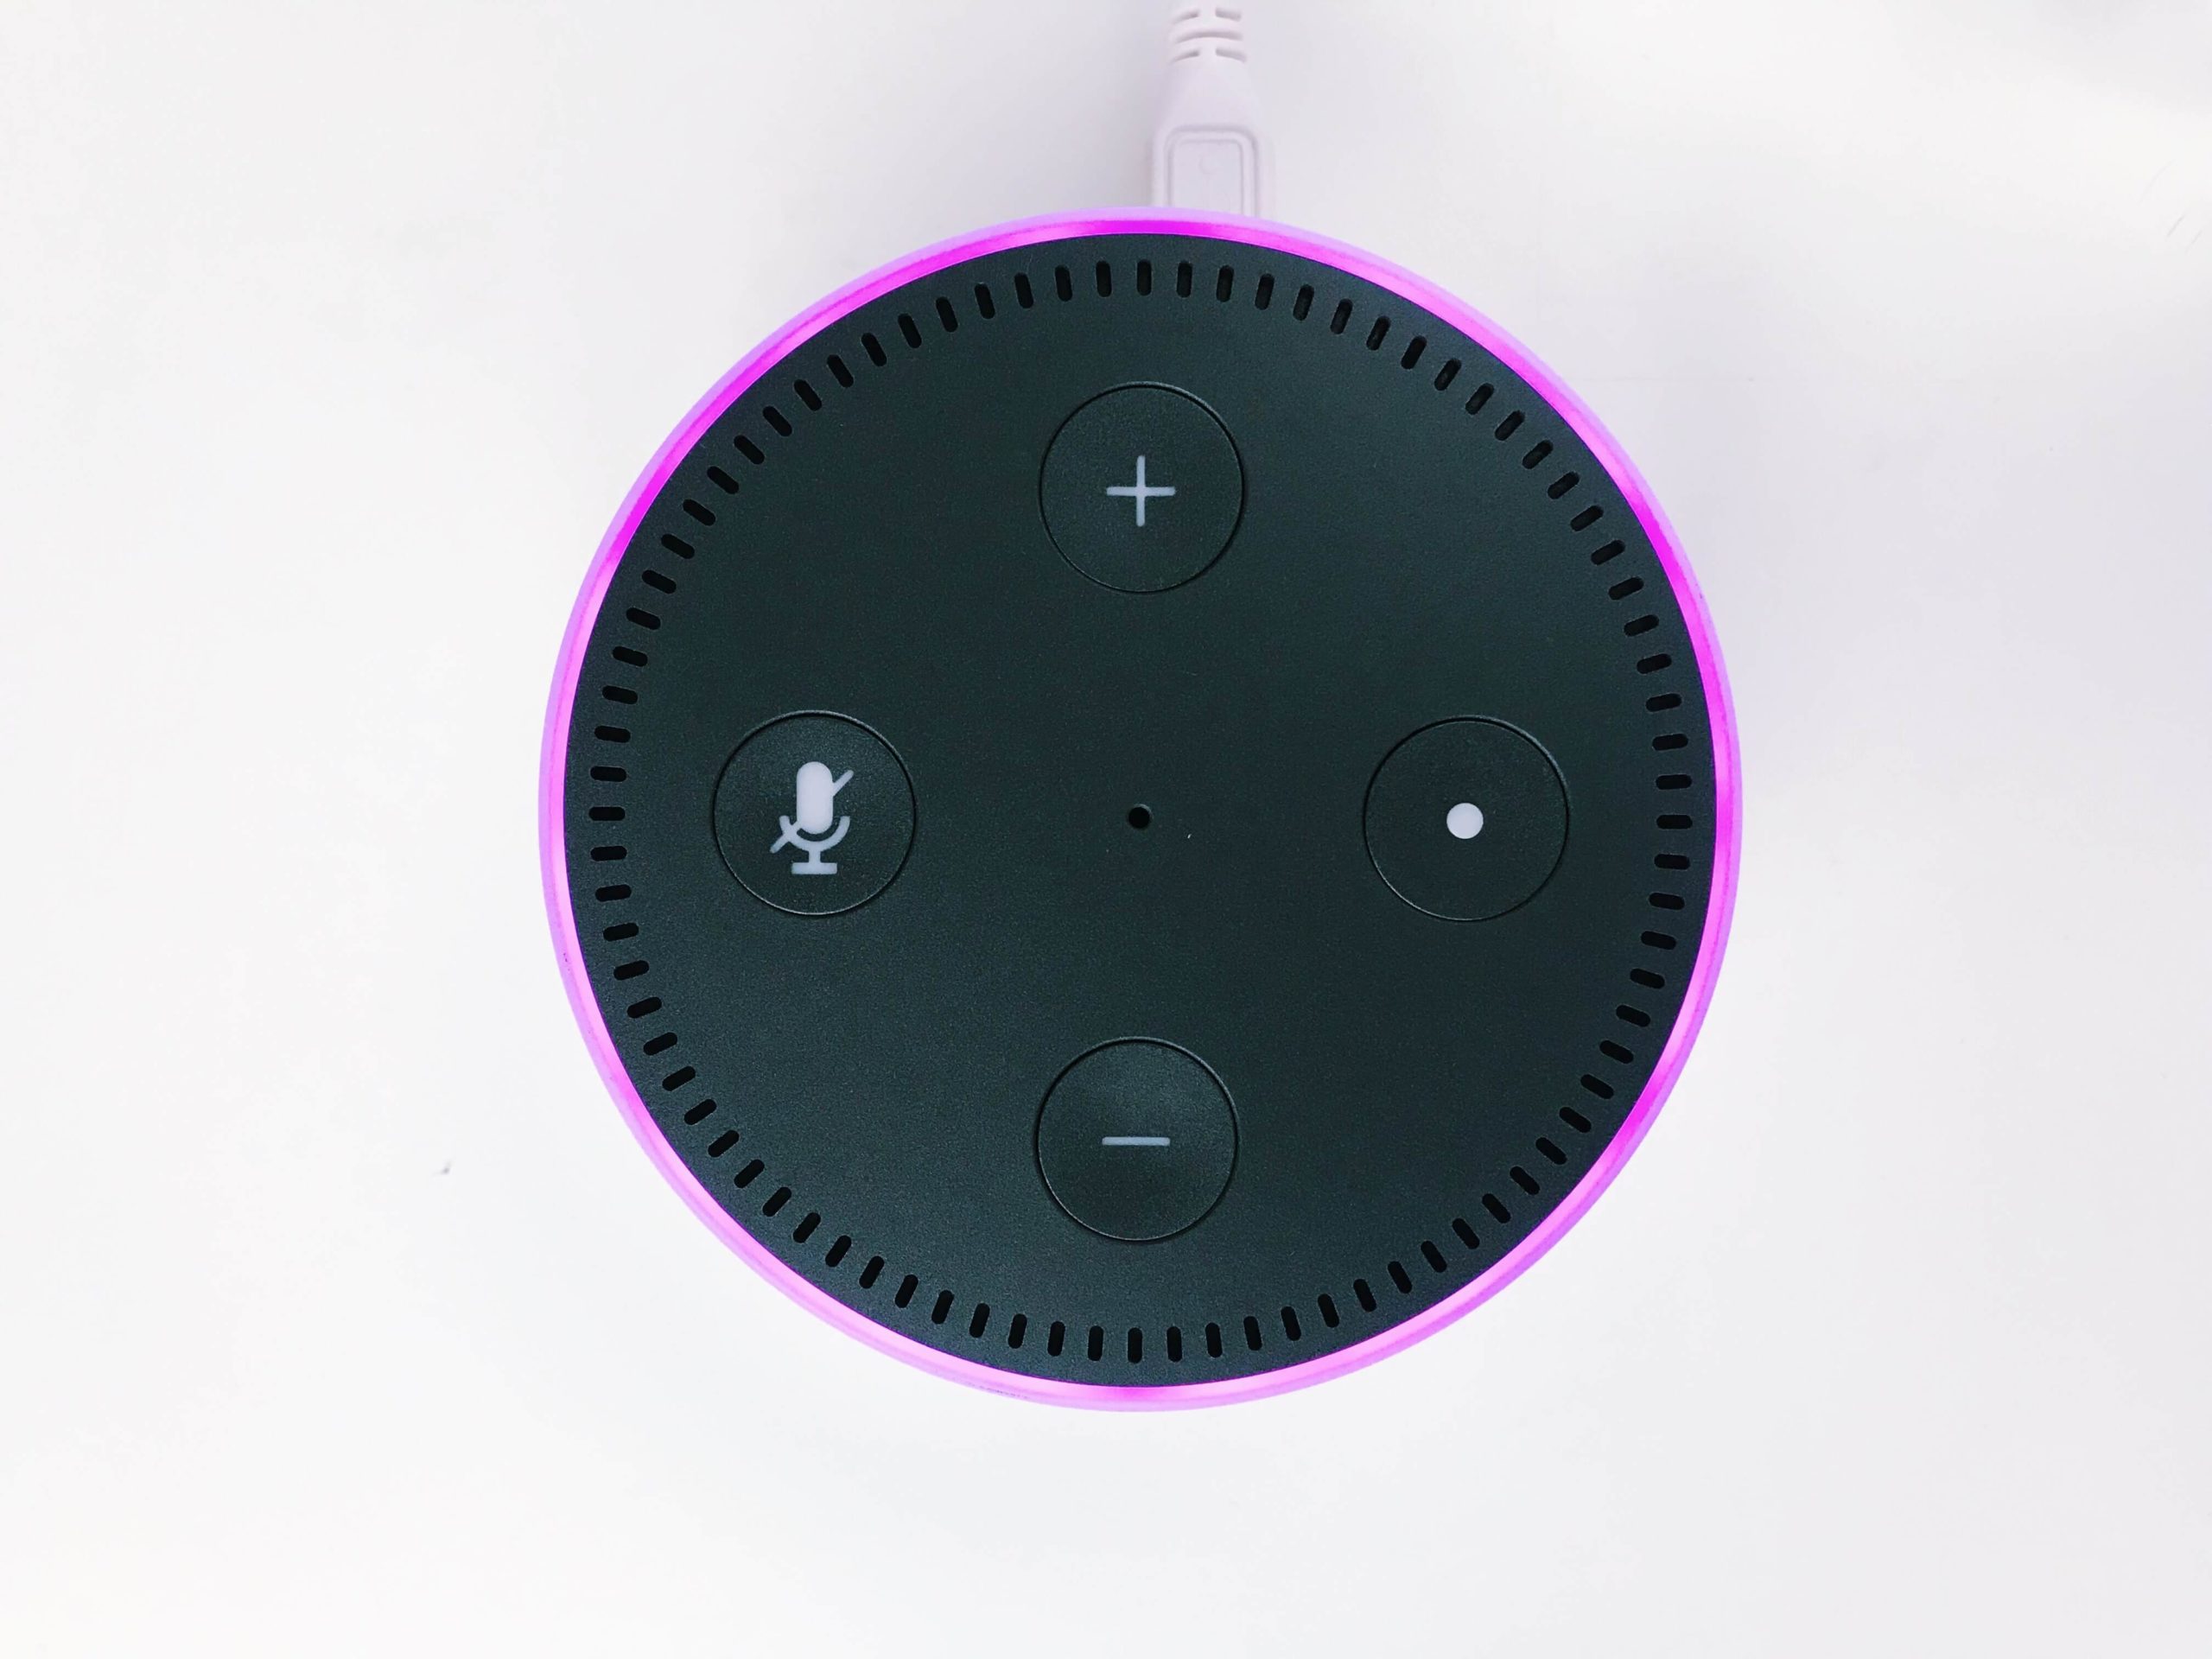 Amazon Alexa enables voice search